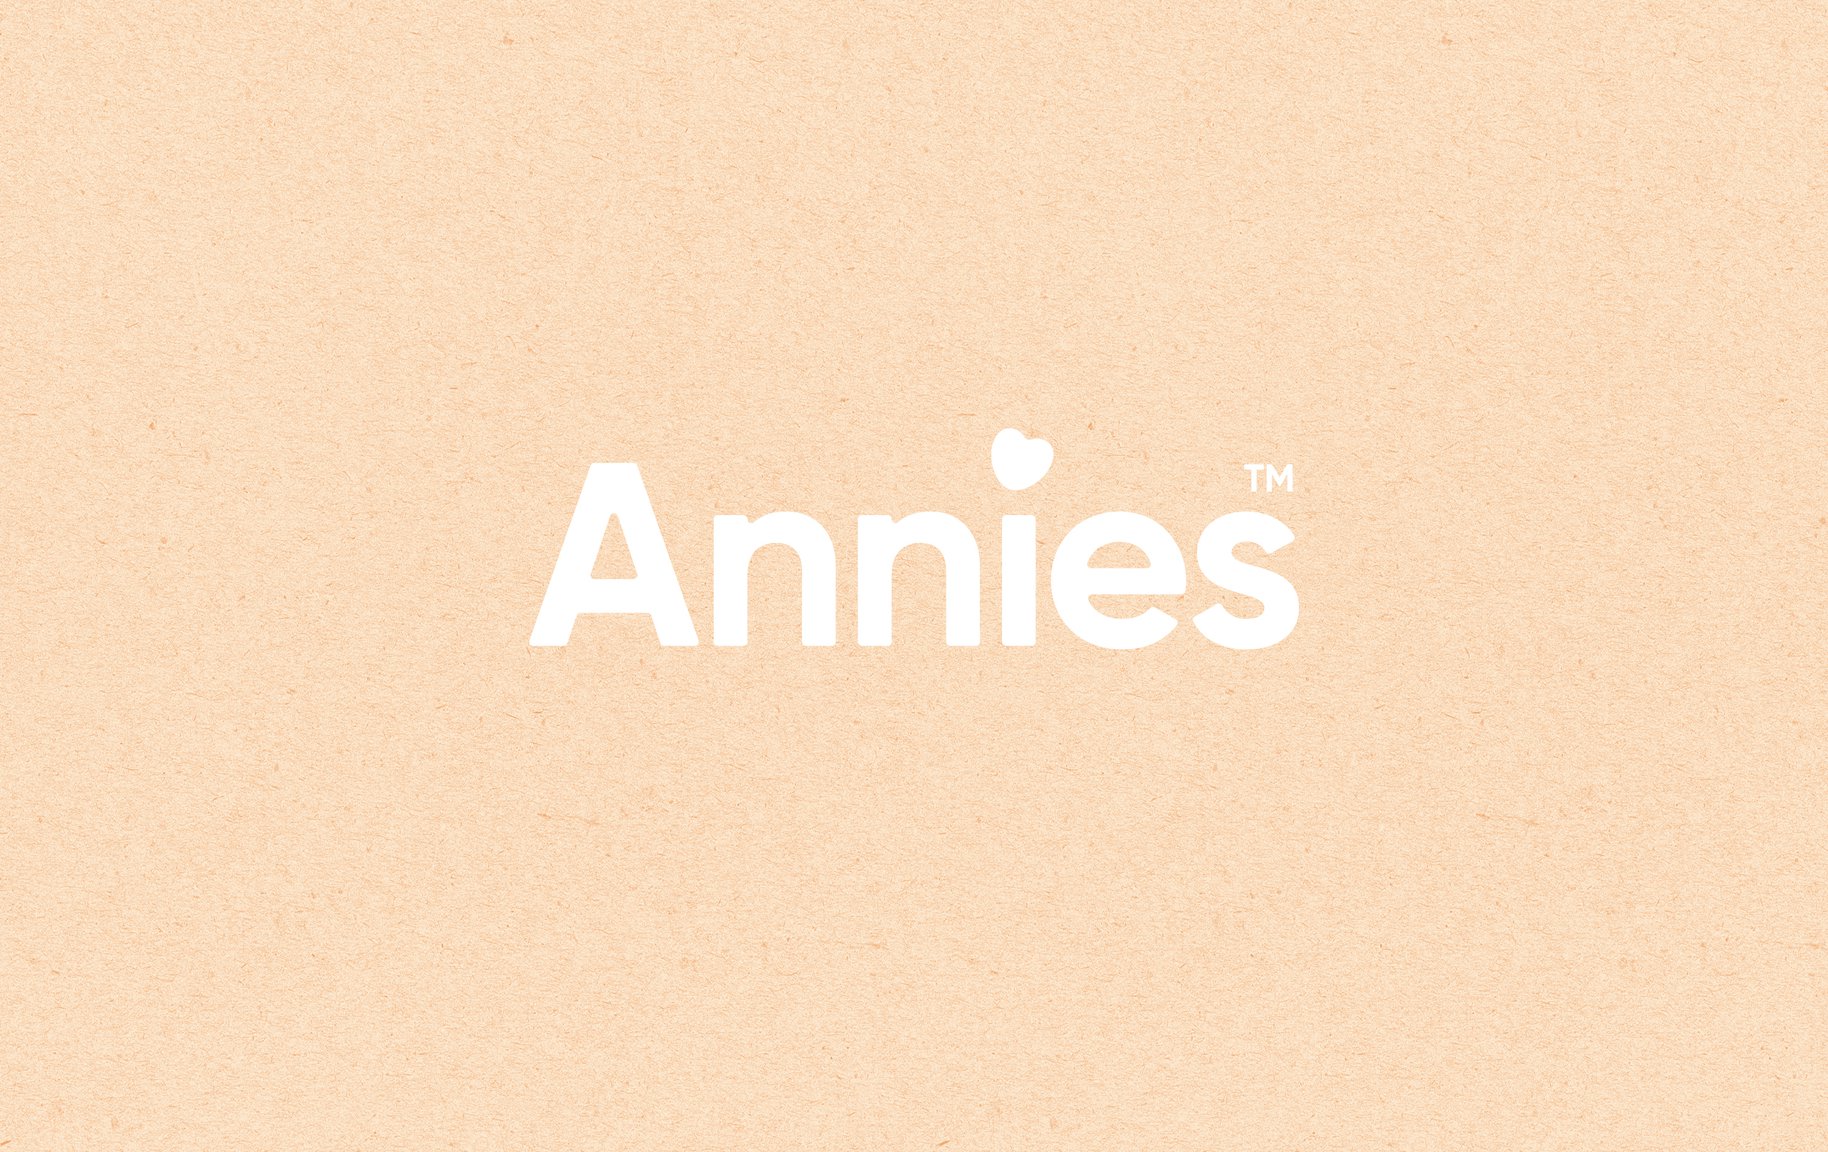 Annie's image